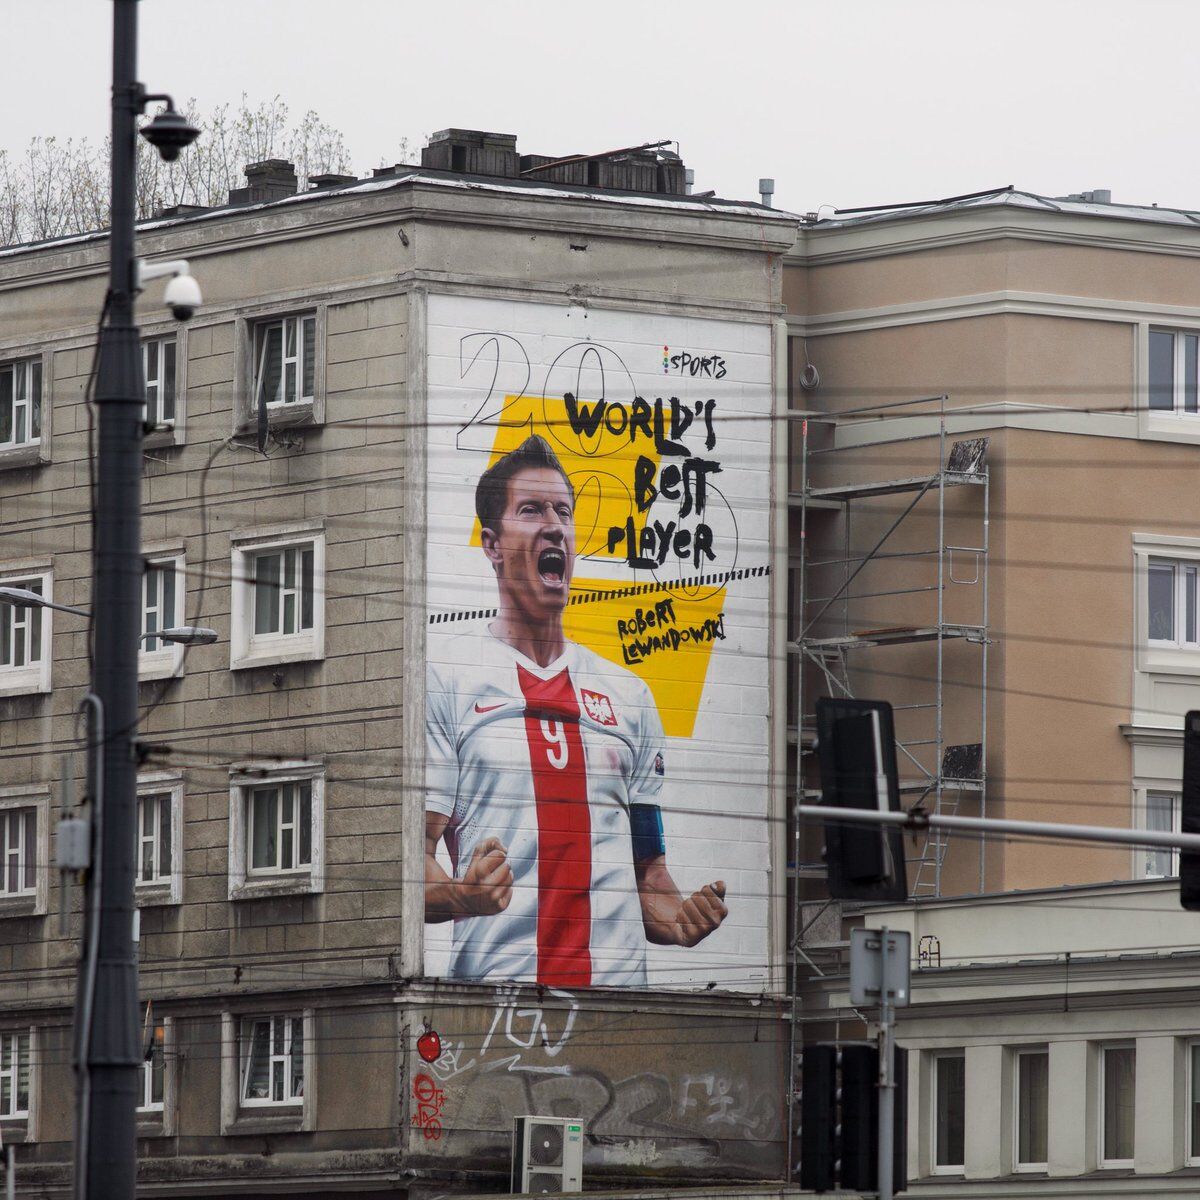 لهستانی‌ها با کشیدن یک نقاشی دیواری بزرگ از روبرت لواندوفسکی او را بهترین بازیکن جهان خواندند.